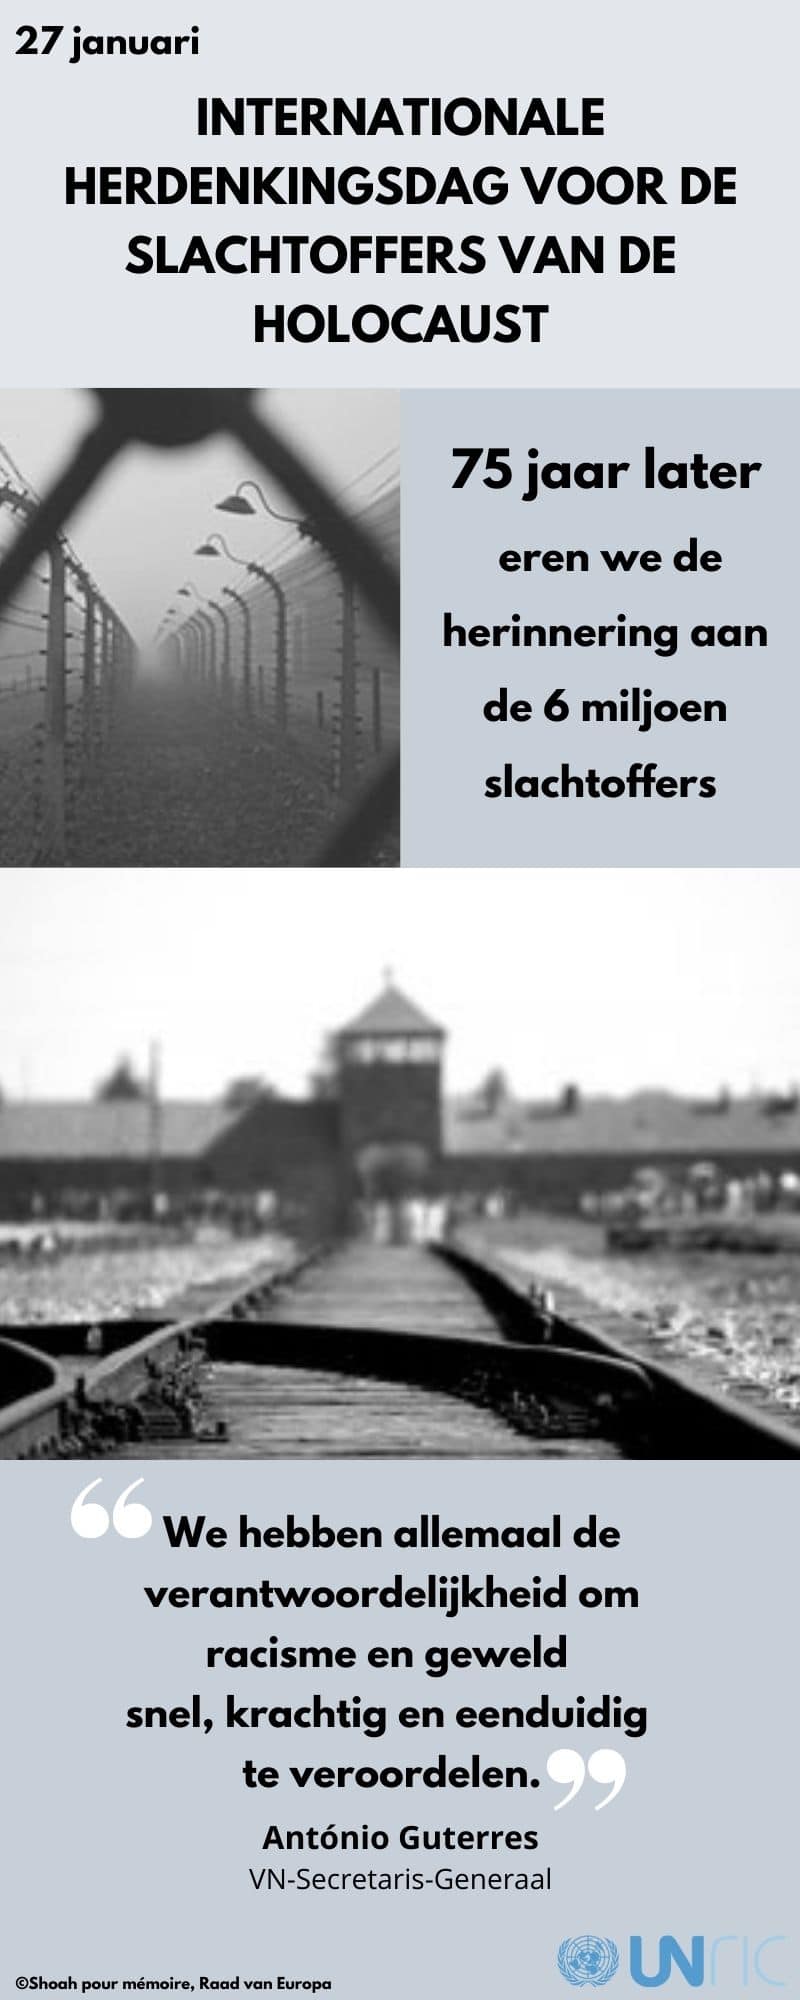 Internationale Herdenkingsdag voor de Slachtoffers van de Holocaust (27 januari 2020)